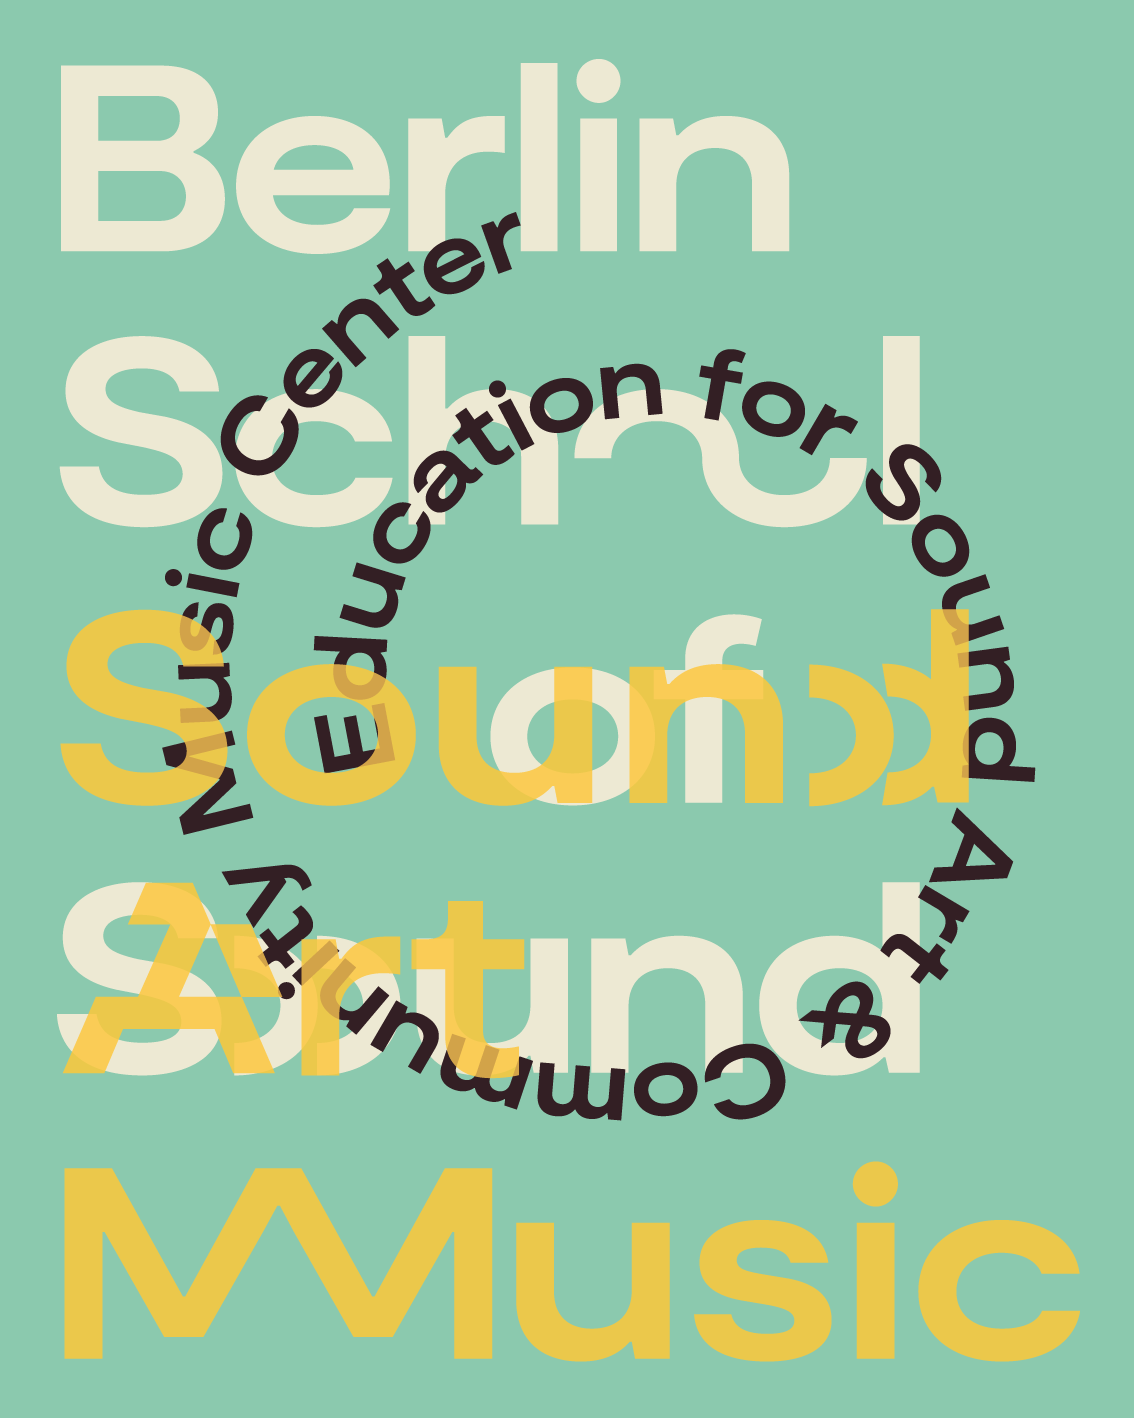 Berlin School of Sound poster